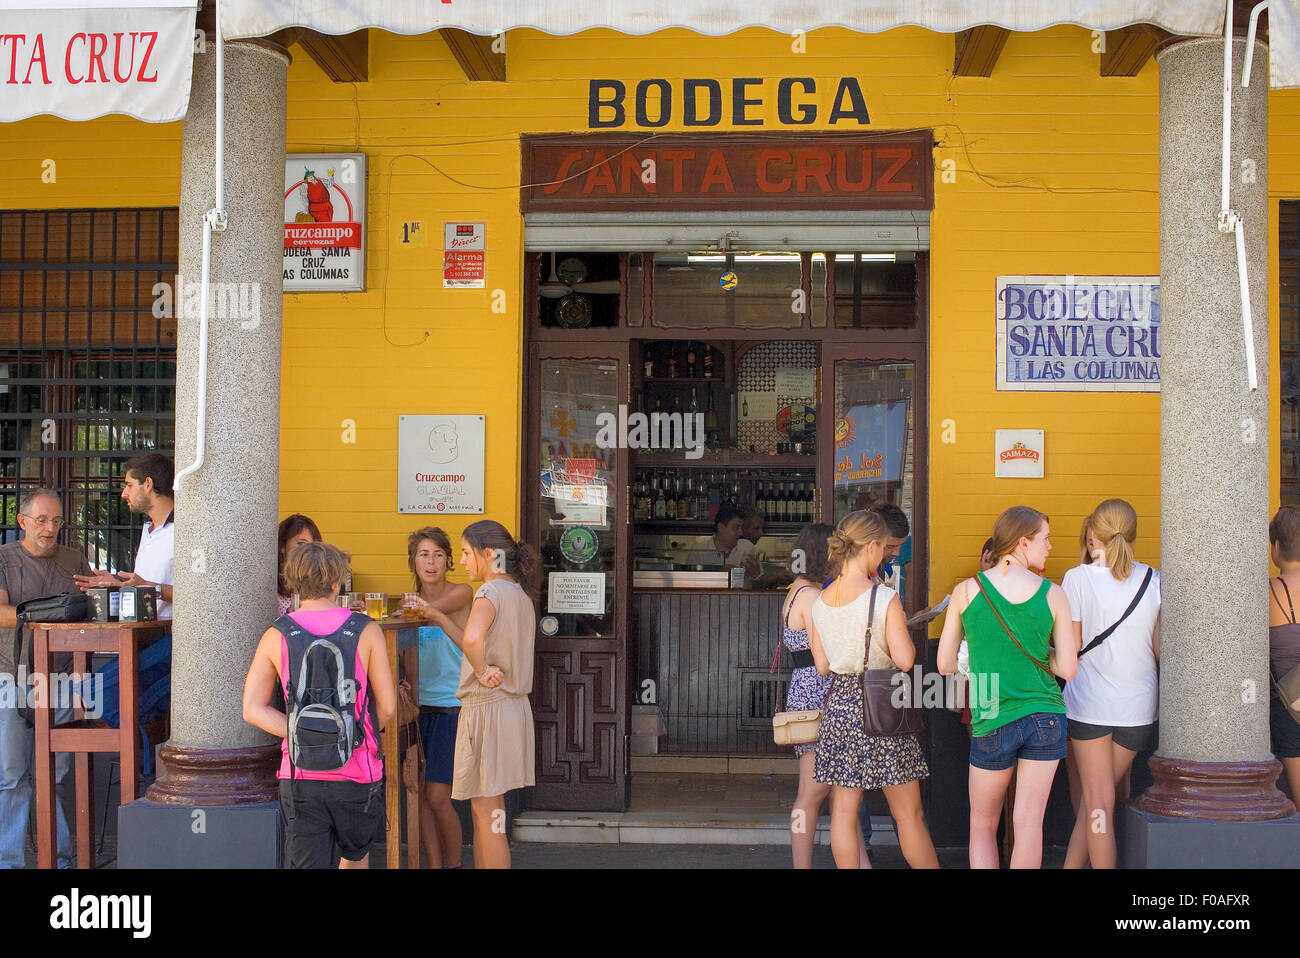 Bodega Santa Cruz, 1 Rodrigo Caro street, One of the most popular tapas bars in the,Santa Cruz Quarter,Sevilla,Andalucía,Spain Stock Photo